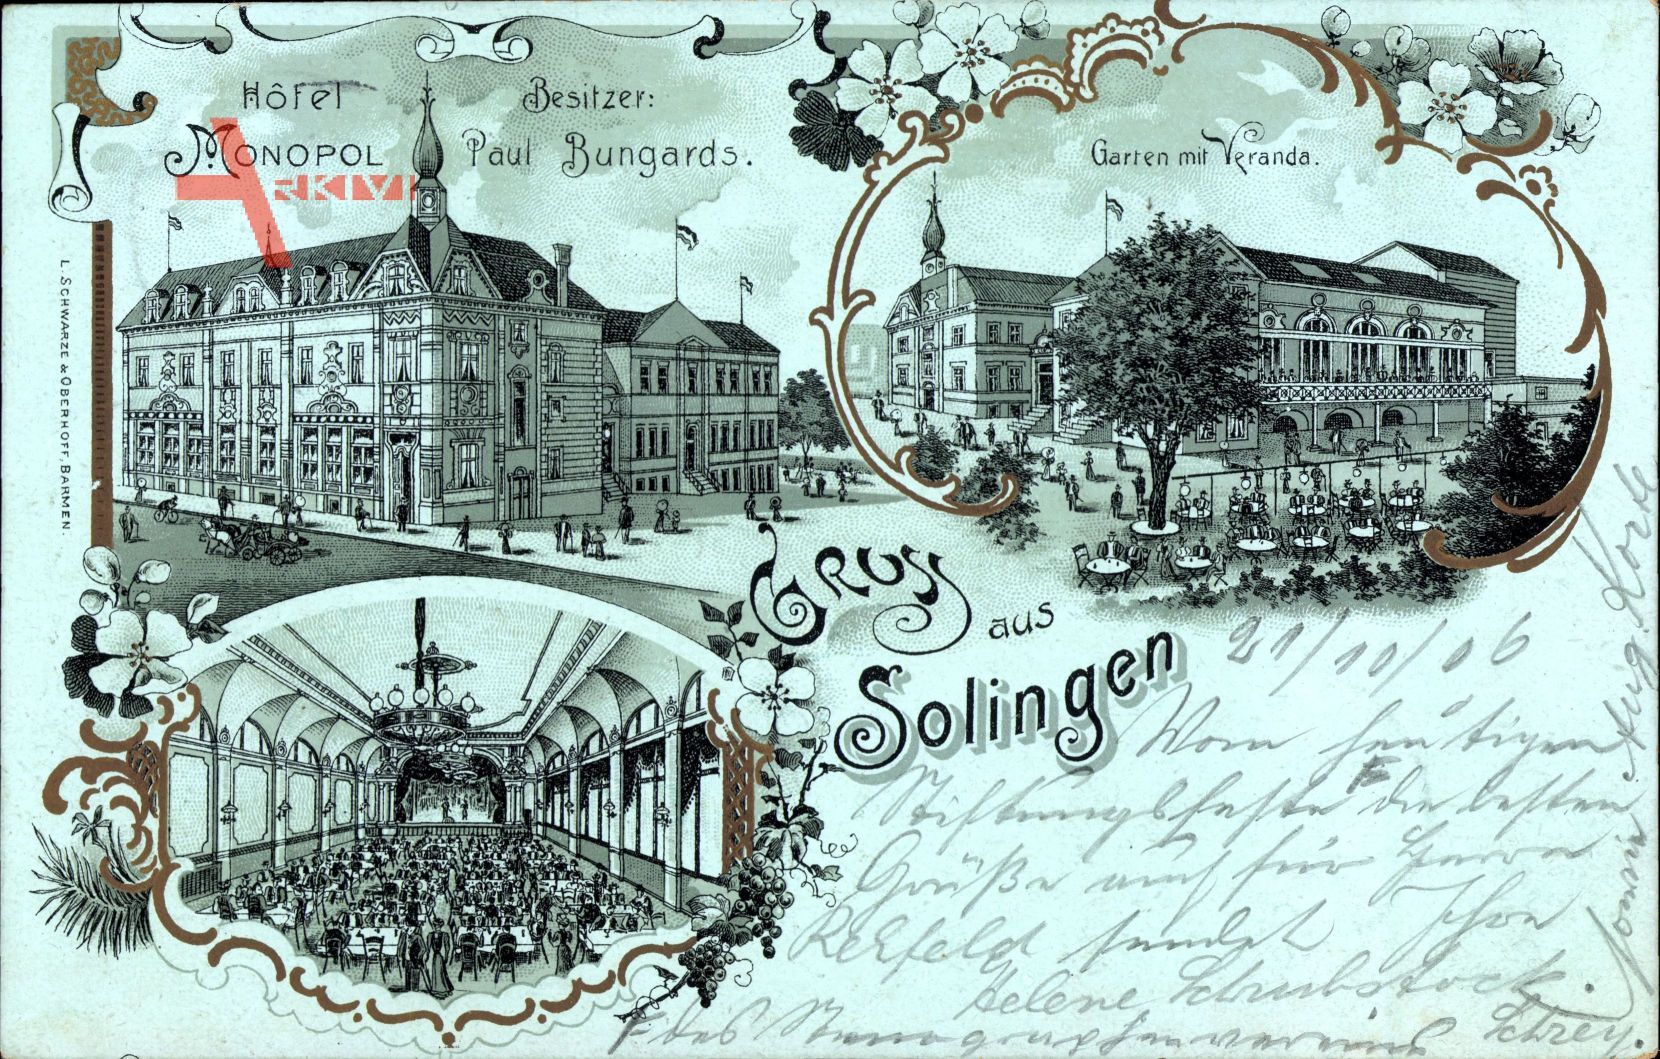 Solingen in Nordrhein Westfalen, Hotel Monopol, Paul Bungards, Garten